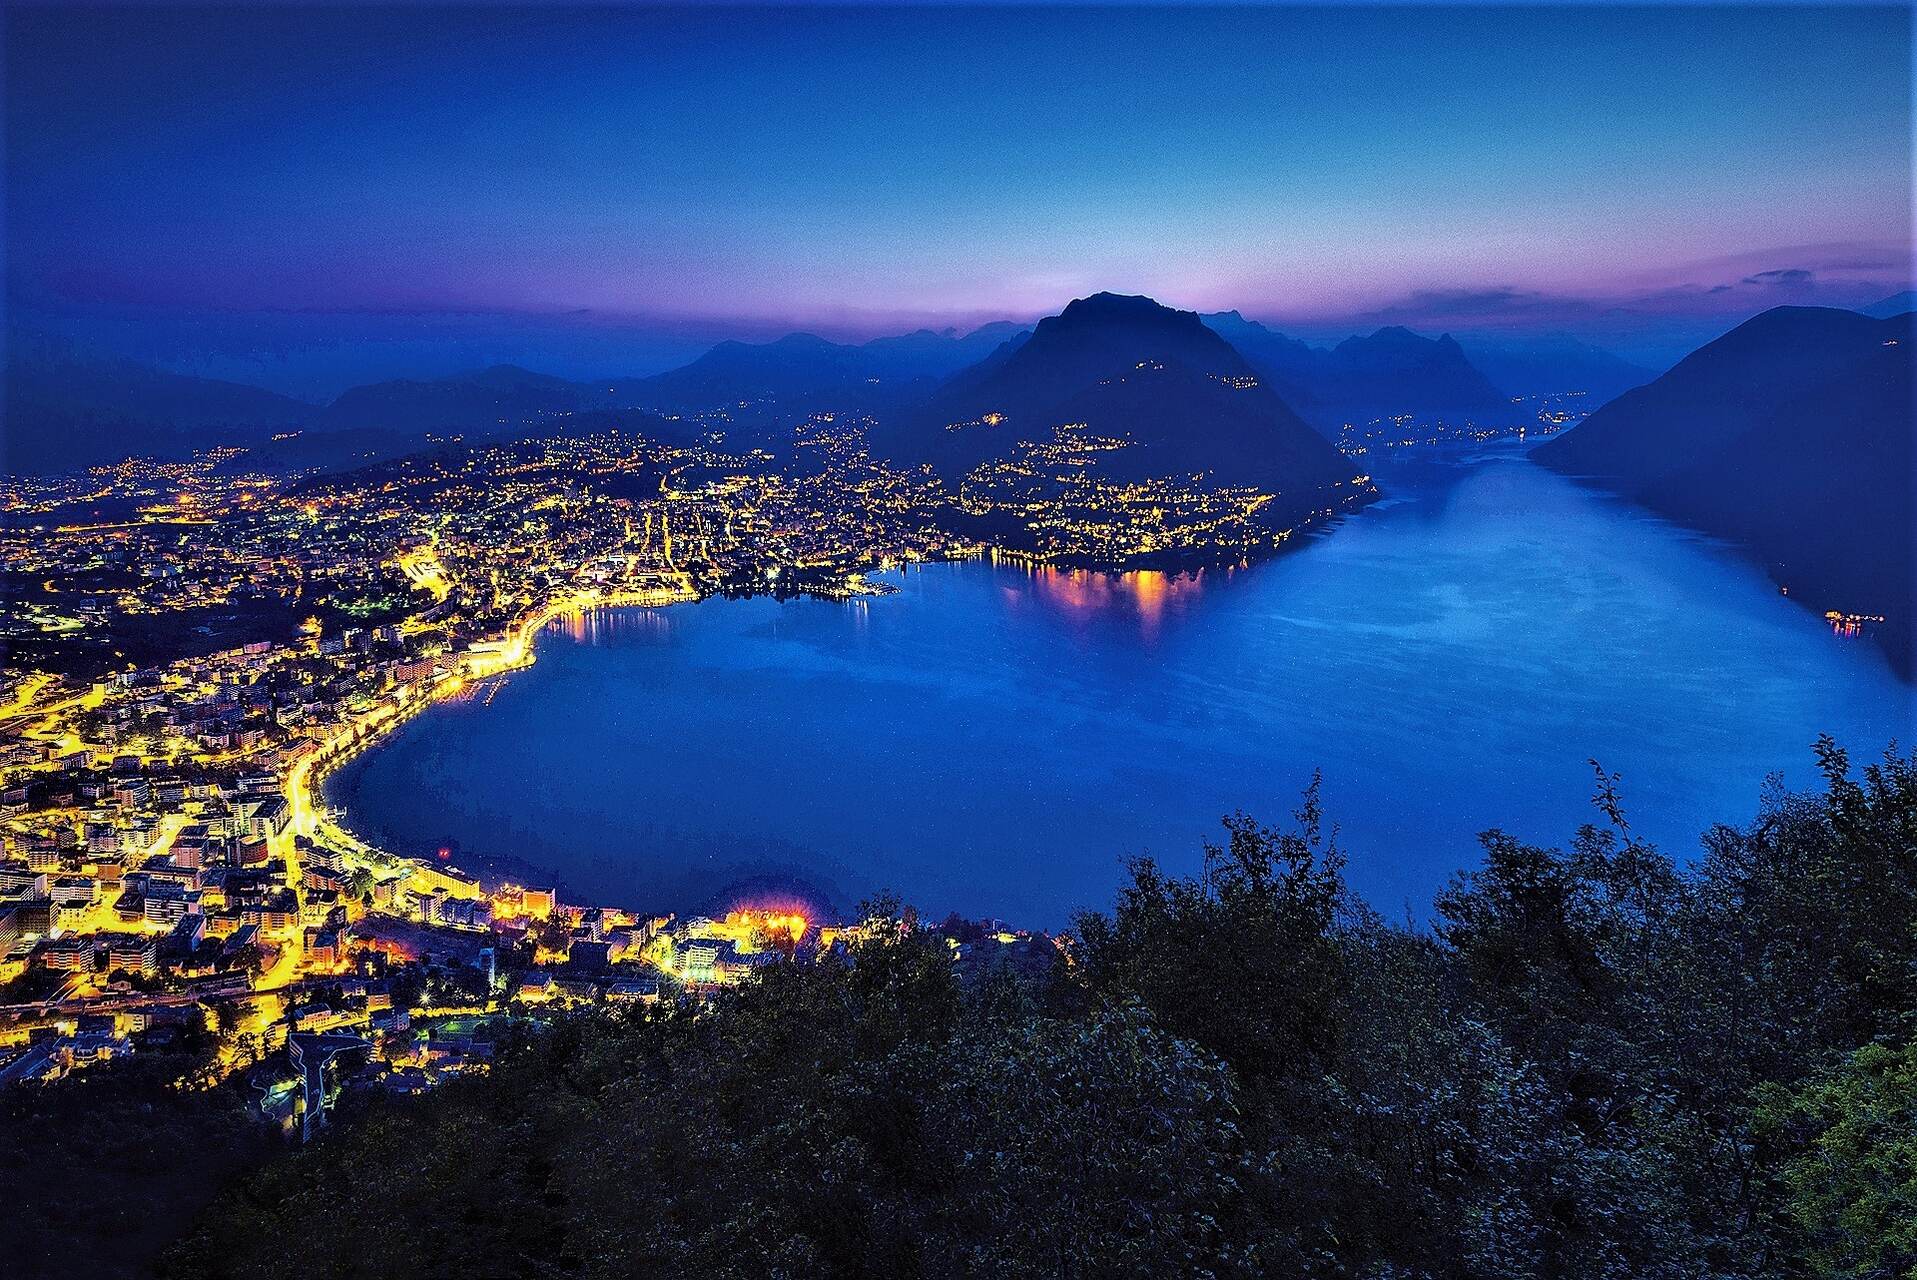 Ente Turistico del Lugano: ქალაქი ლუგანო ტიჩინოს კანტონში, მონტე სან-სალვატორიდან